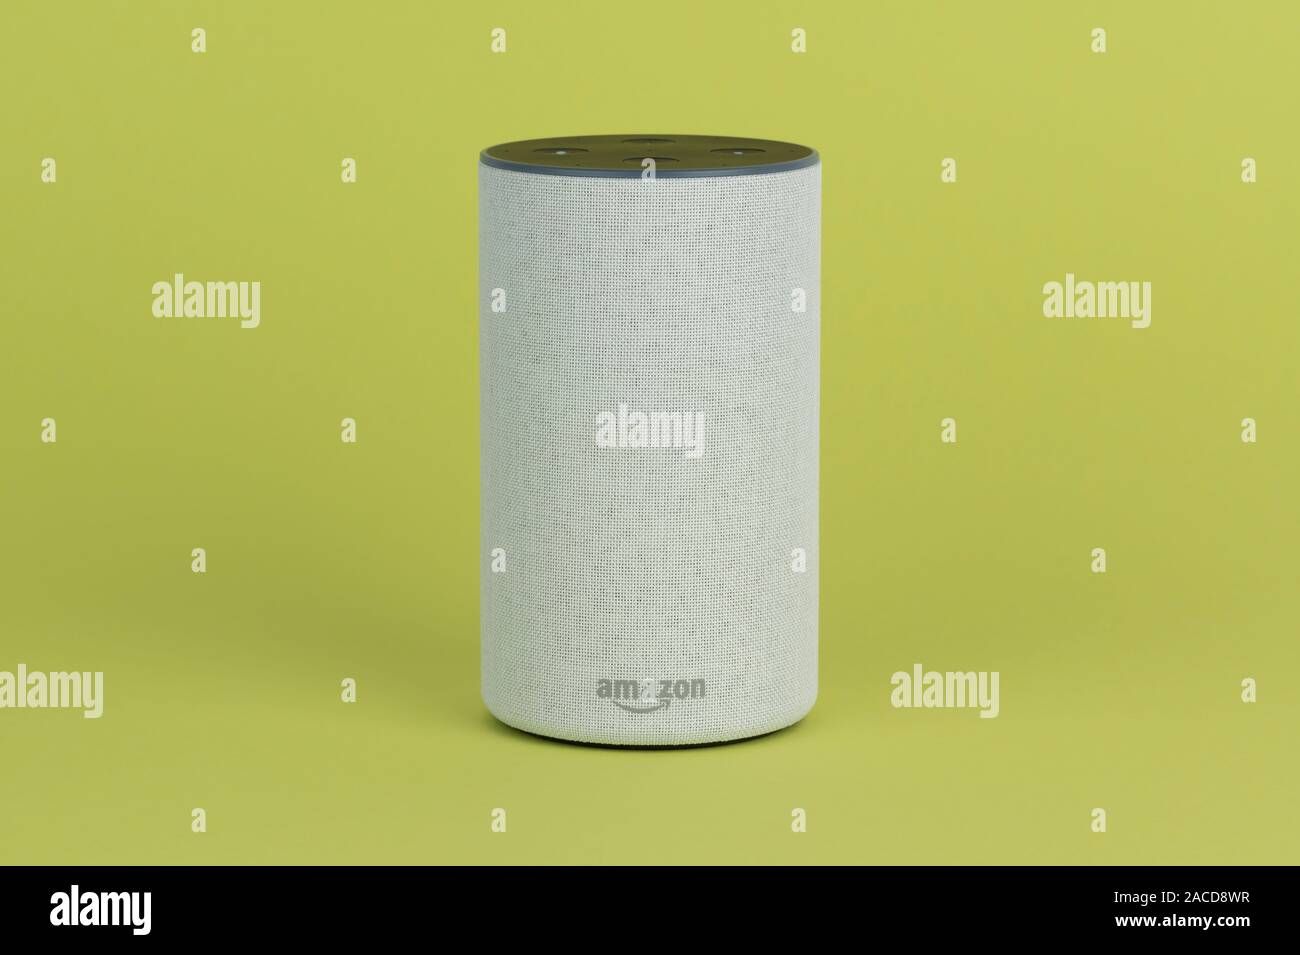 Il 2017 Rilascio di un Amazon eco (di seconda generazione) smart speaker e assistente personale Alexa sparato contro uno sfondo verde. Foto Stock